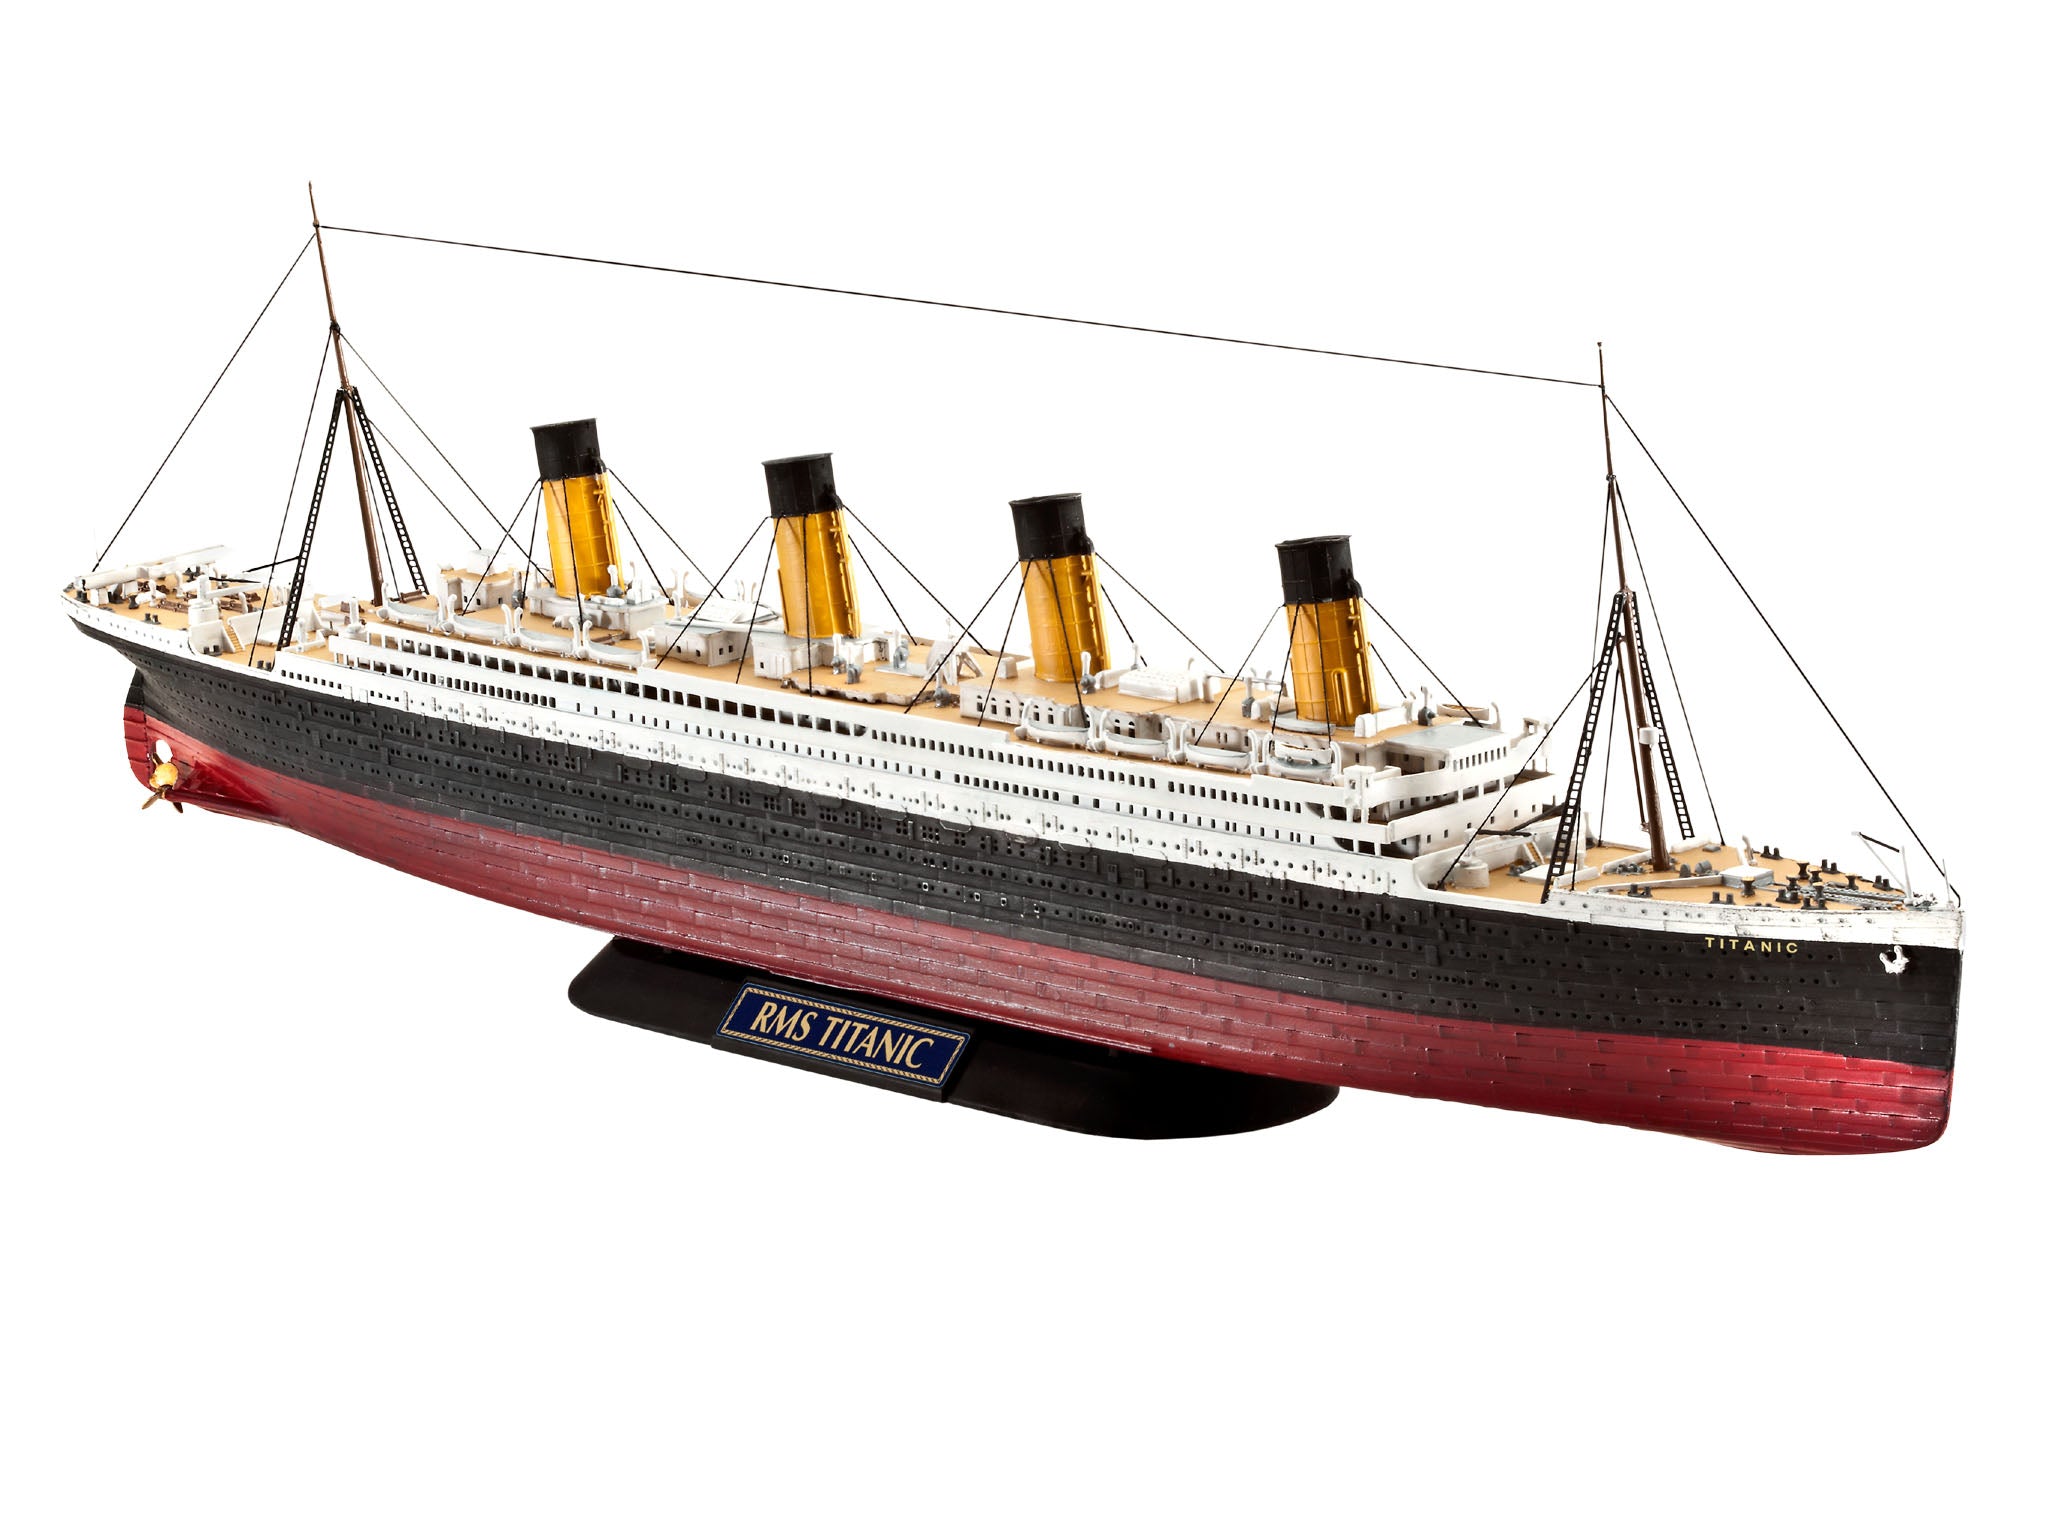 Revell RMS Titanic 1:700 Scale Ship Model Kit